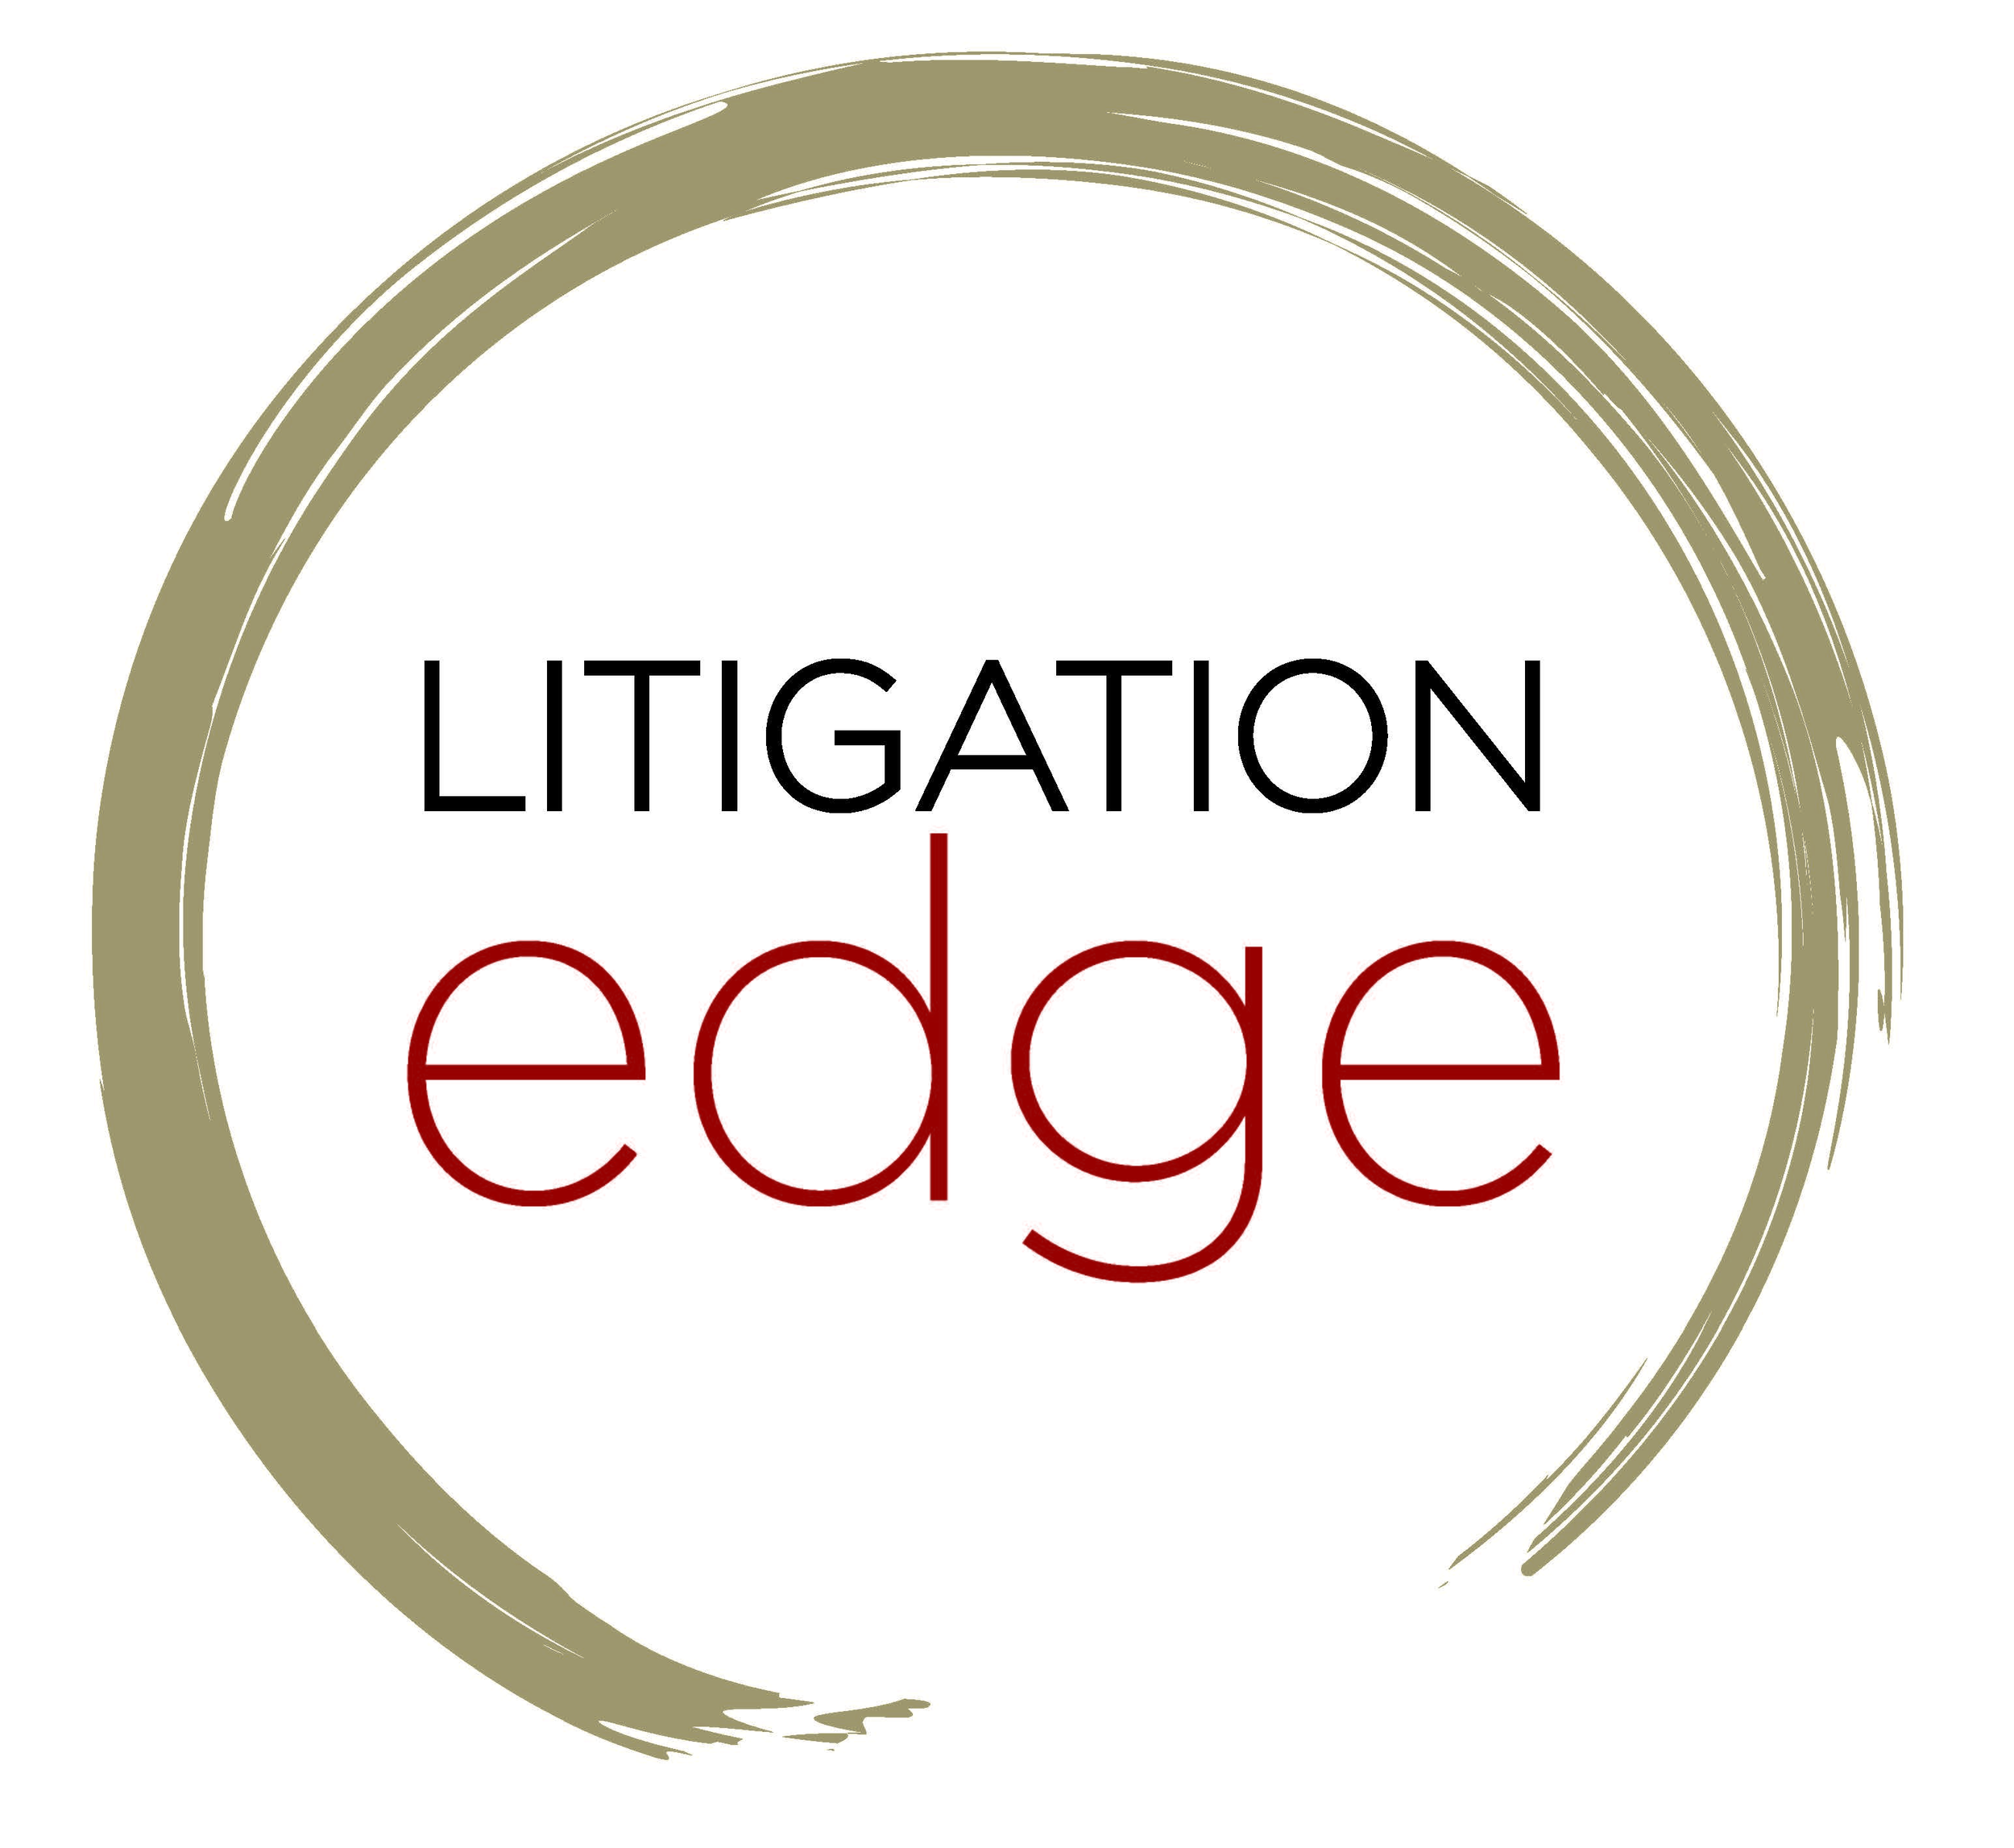 Litigation Edge.png